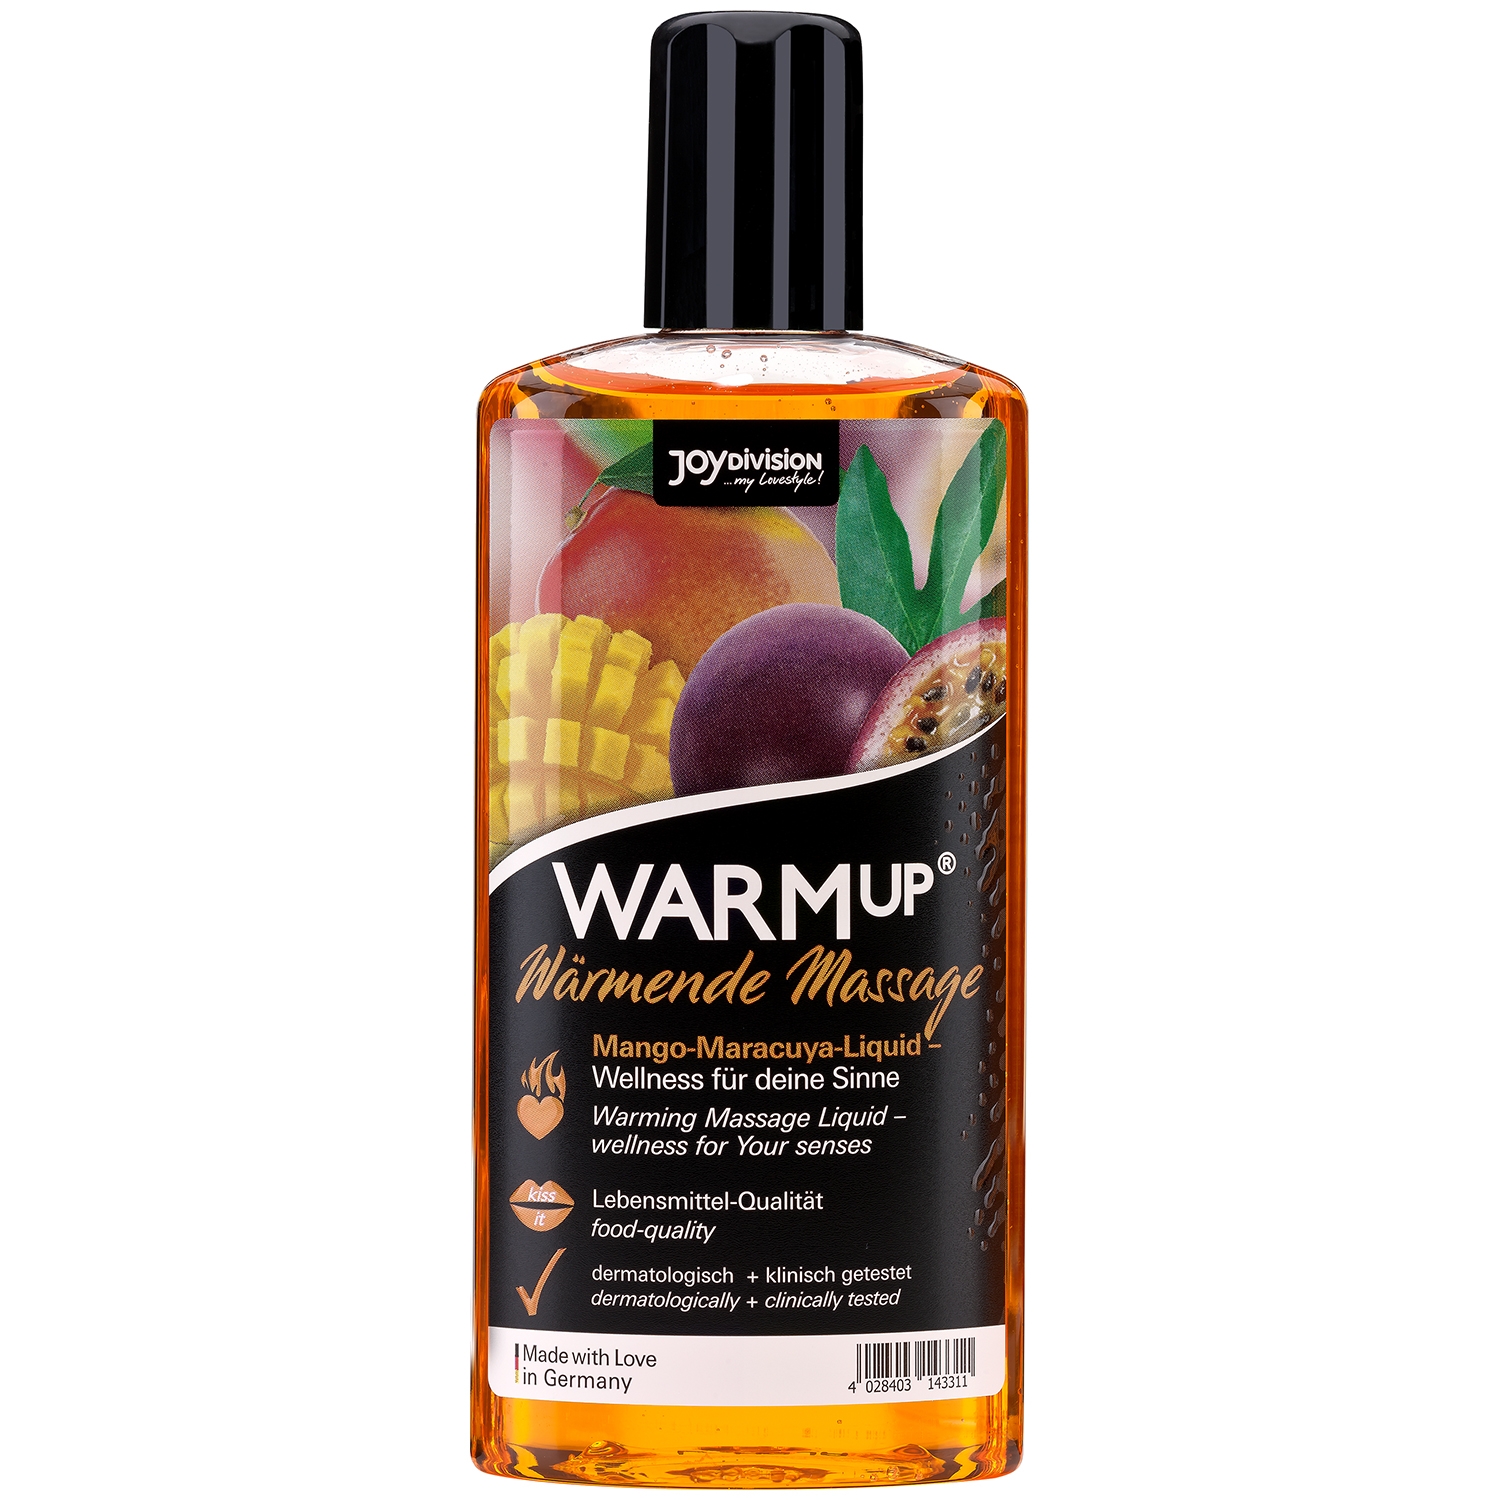 14: Joydivision WARMup Varmende Massageolie med Smag 150 ml - Orange